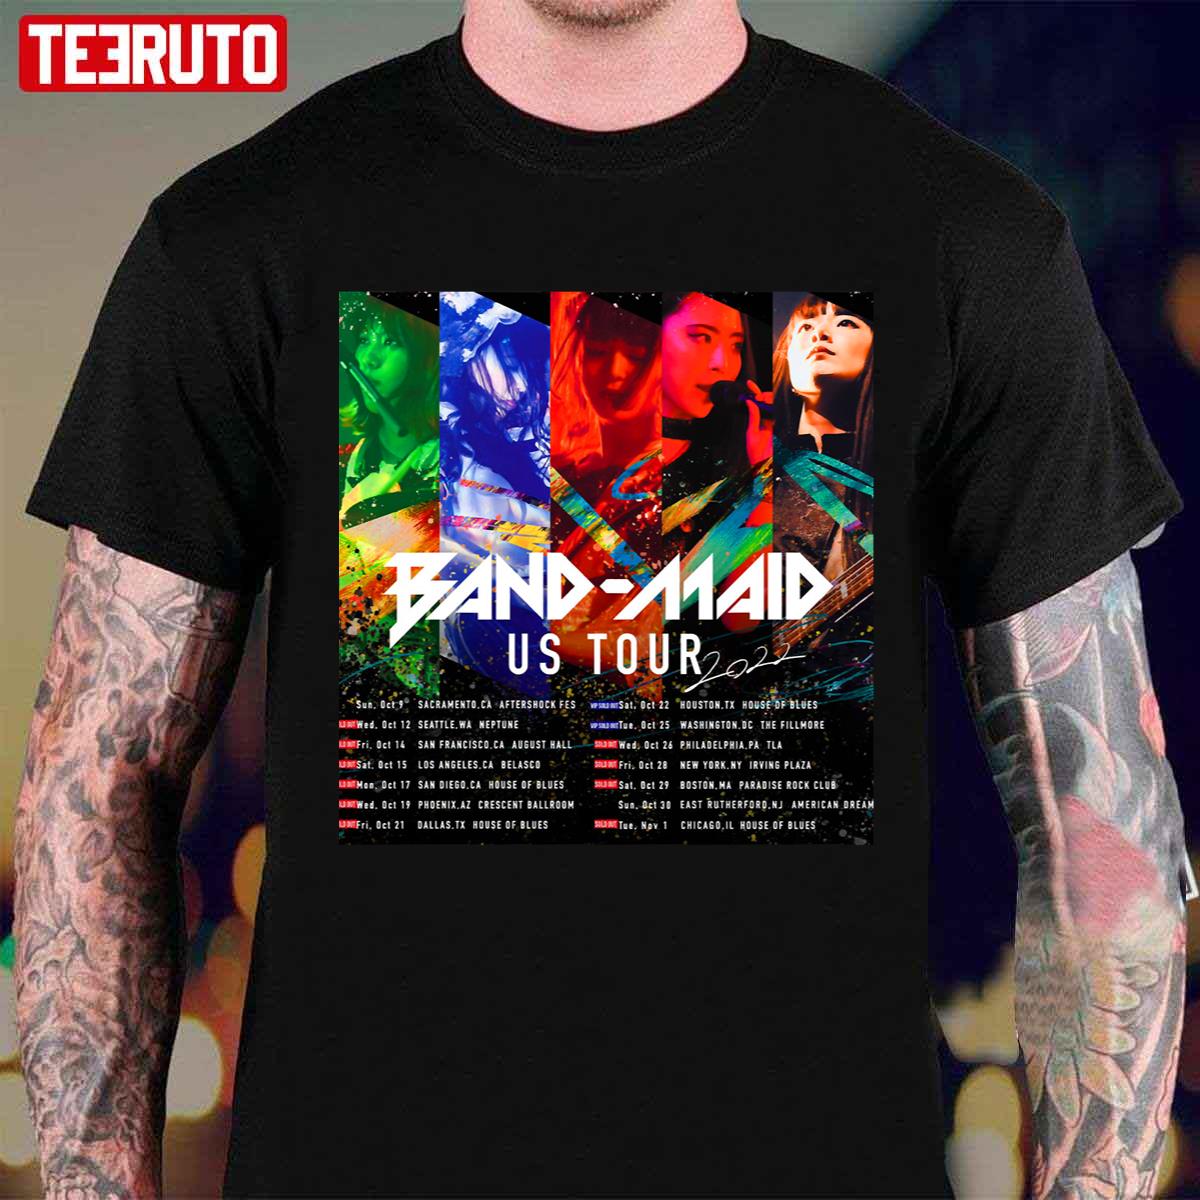 Band Maid US Tour Dates Unisex Sweatshirt